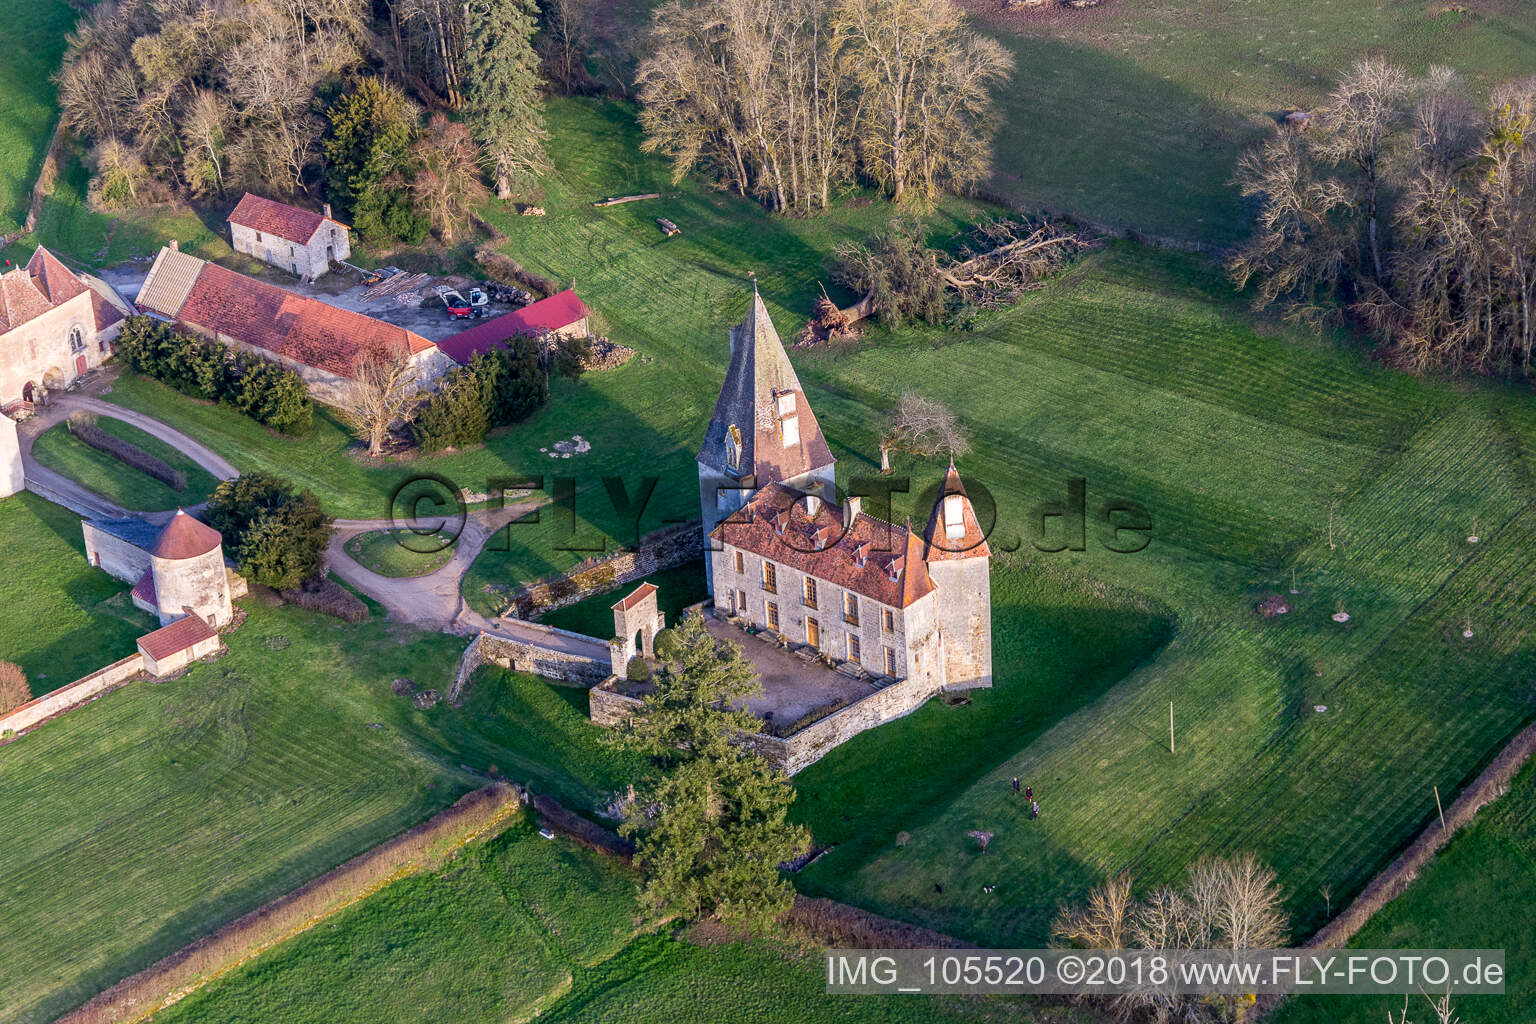 Photographie aérienne de Château de Morlet en Bourgogne à Morlet dans le département Saône et Loire, France